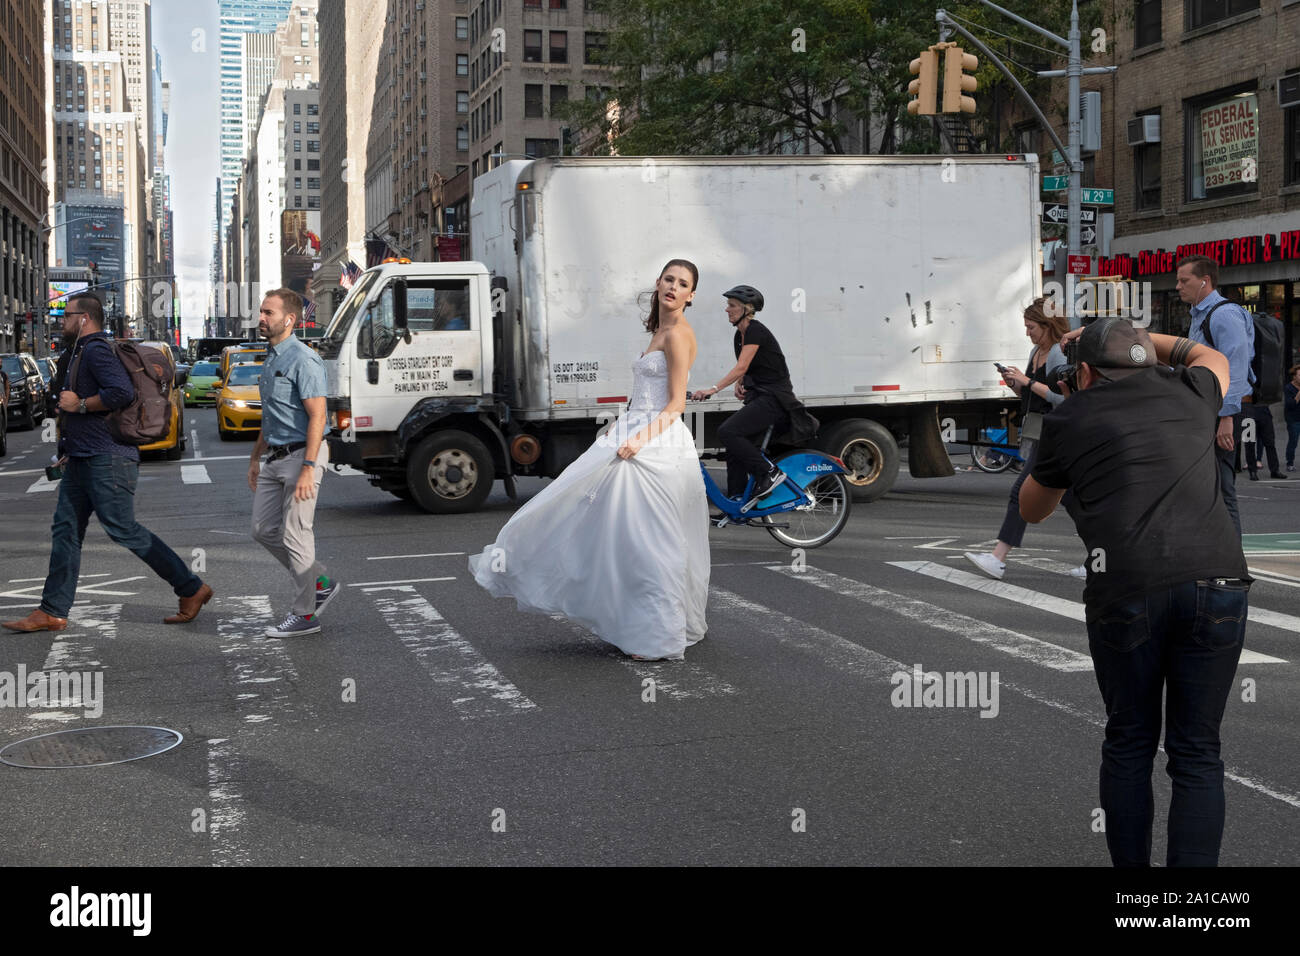 Un modèle d'une robe nuptiale pose pour des photos sur un coin de rue animée - 7th Ave. et West 29th Street - à Manhattan, New York City. Banque D'Images